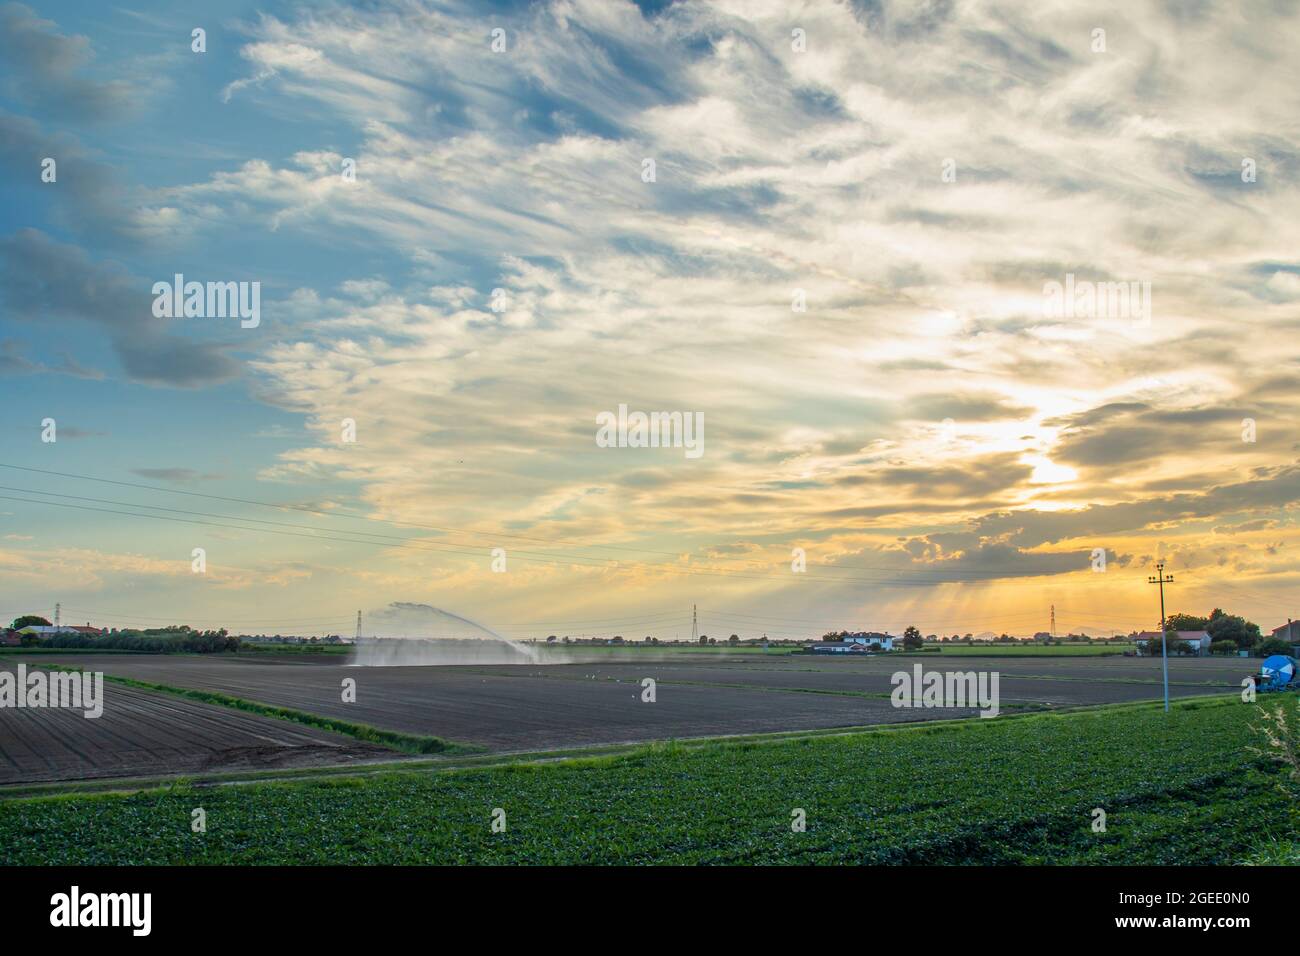 Paesaggio rurale, campo agricolo impianto di irrigazione sullo sfondo del cielo del tramonto Foto Stock